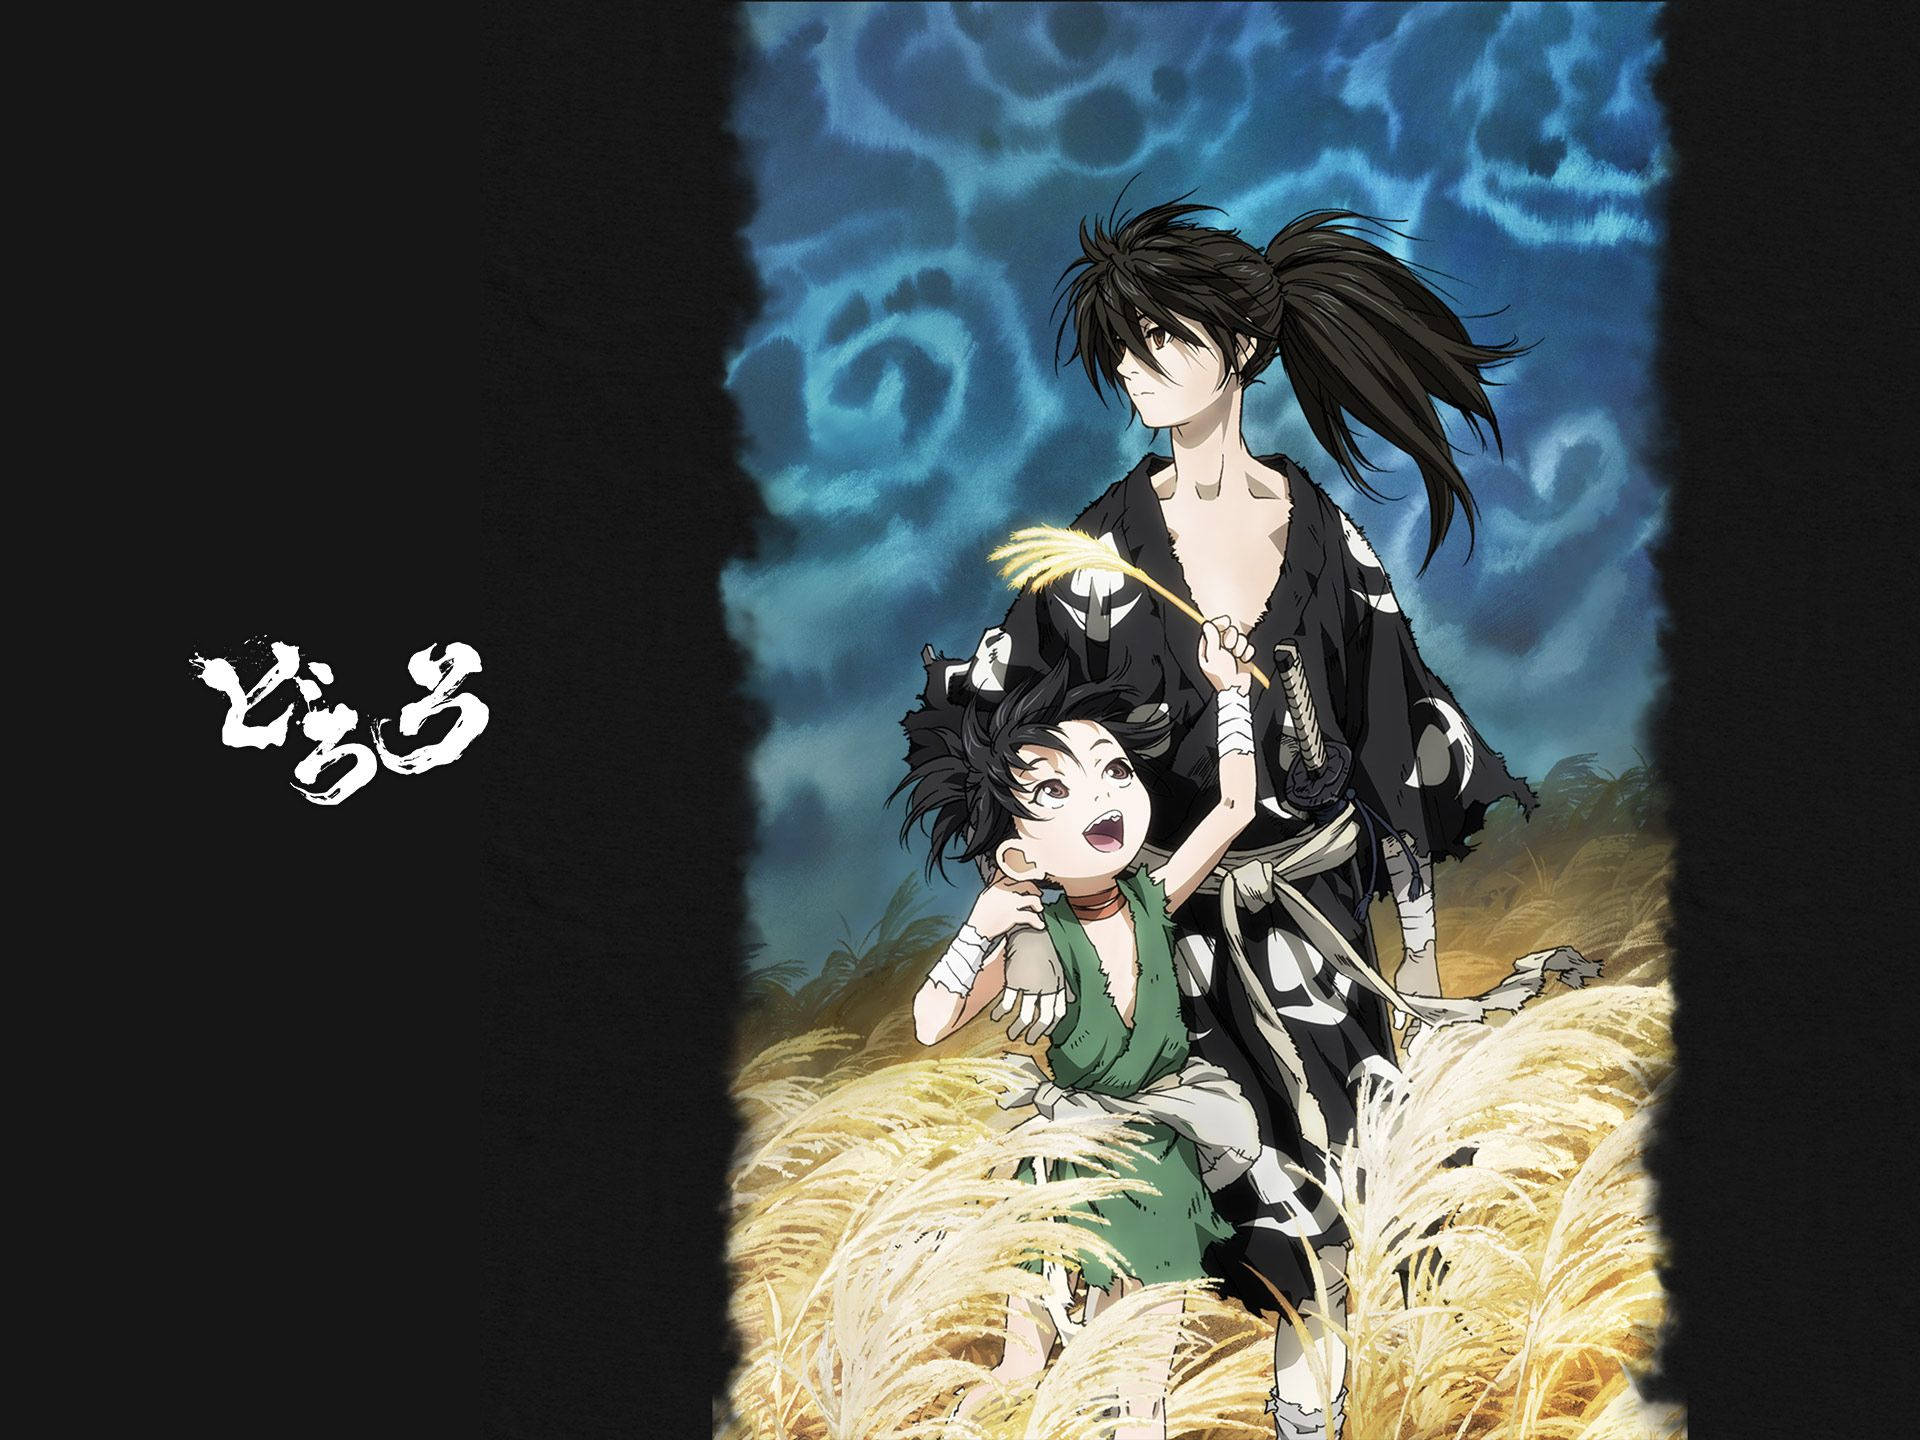 "The bond between Hyakkimaru and Dororo cannot be denied" Wallpaper